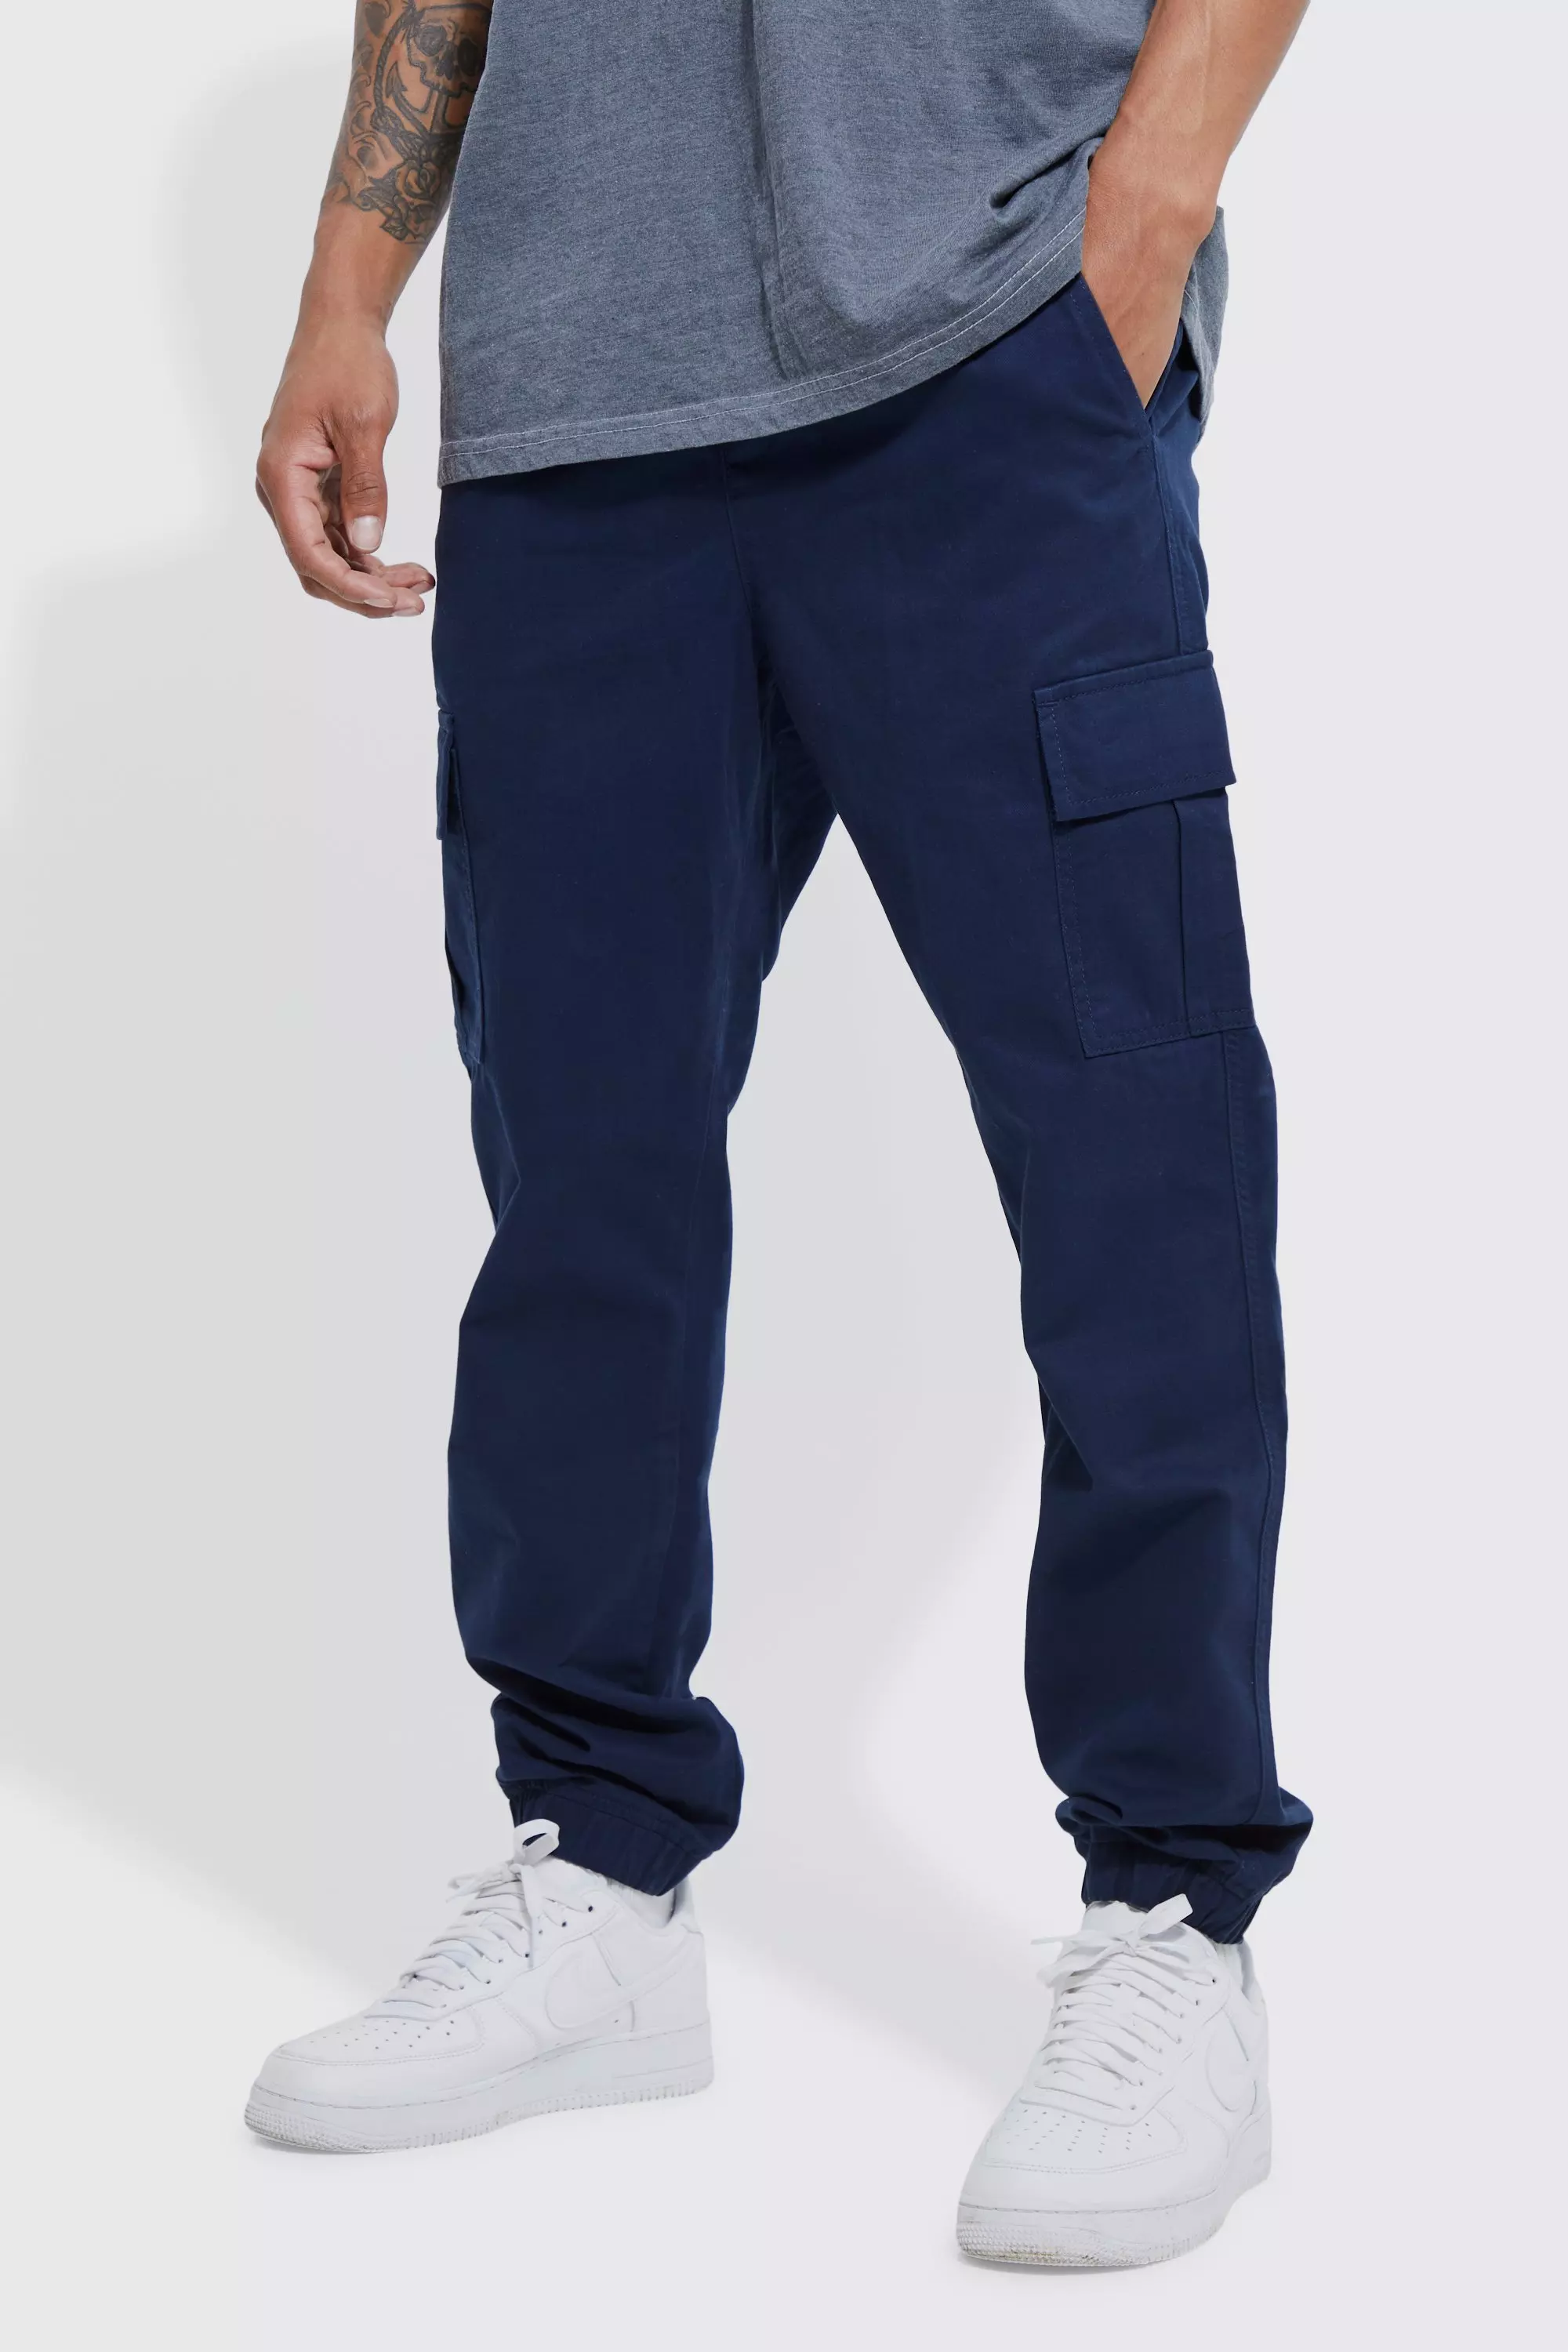 Men's Navy Cargo Trousers | Navy Cargo Pants | boohooMAN UK